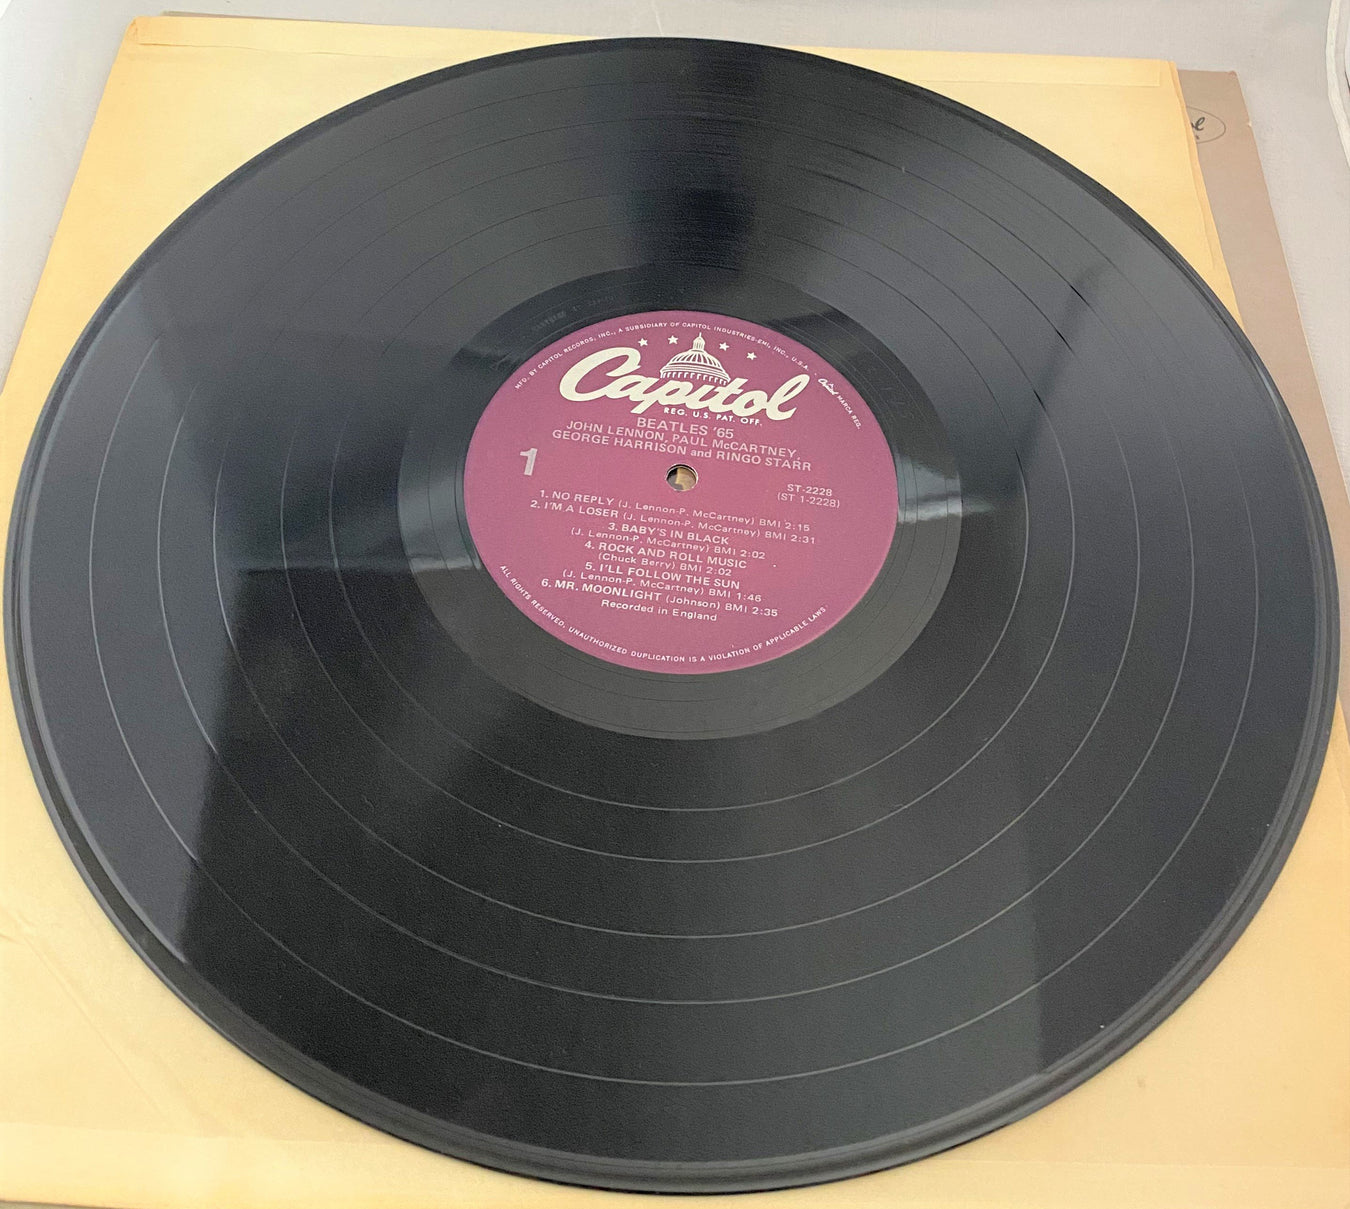 The Beatles' Vinyl 